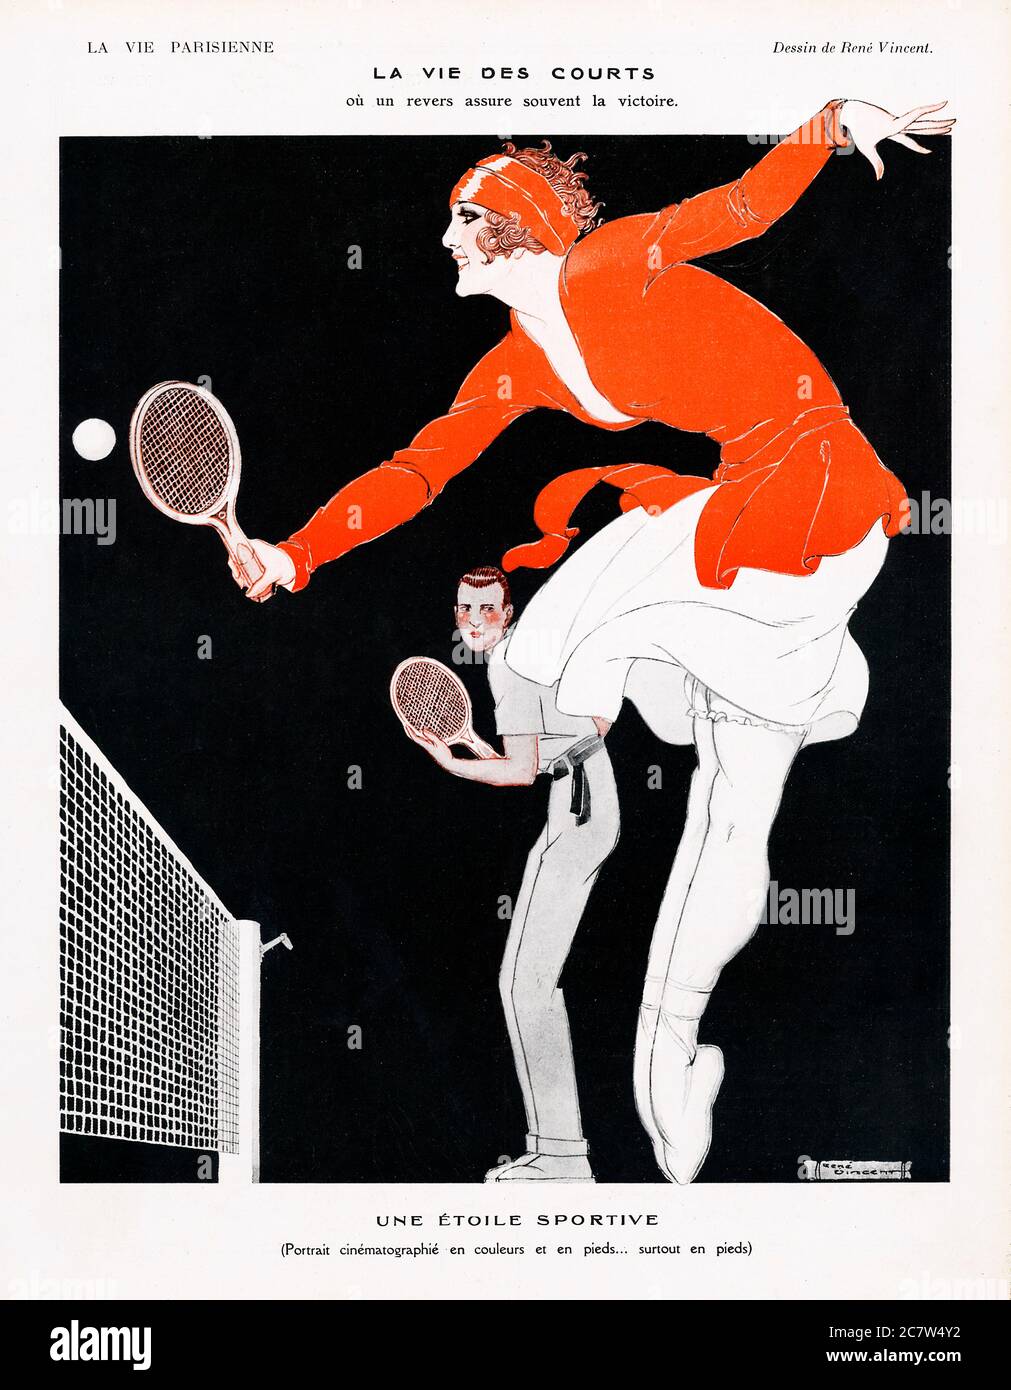 Tenis, la Vie Des Courts, la vida en la cancha con un backhand ganador, y un retrato cinematográfico de una estrella deportiva en color y en pies, en punto Foto de stock